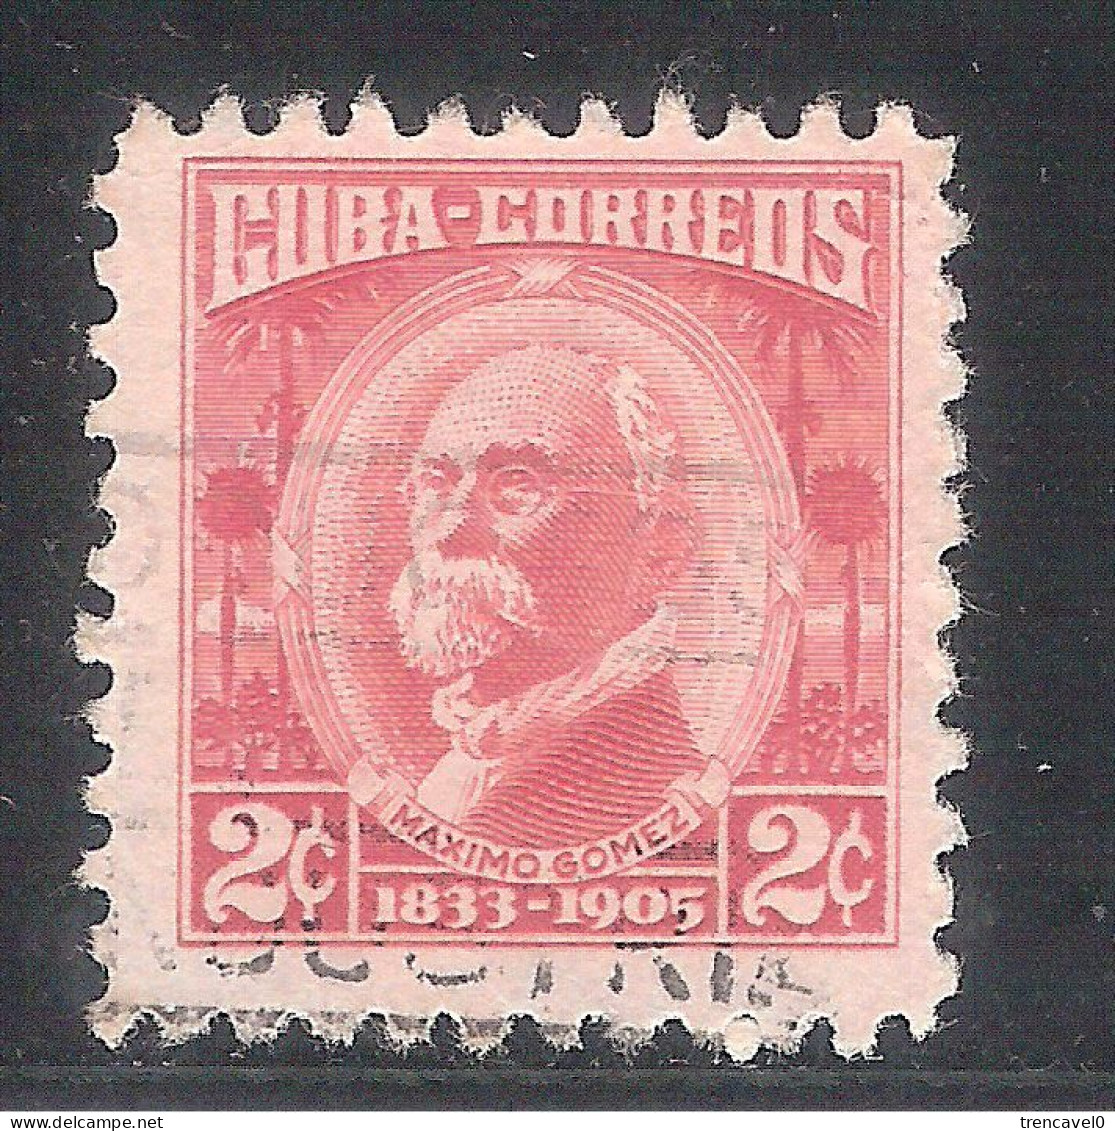 Cuba 1954- 1 Sello Usado Y Circulado - Máximo Gómez - Usados